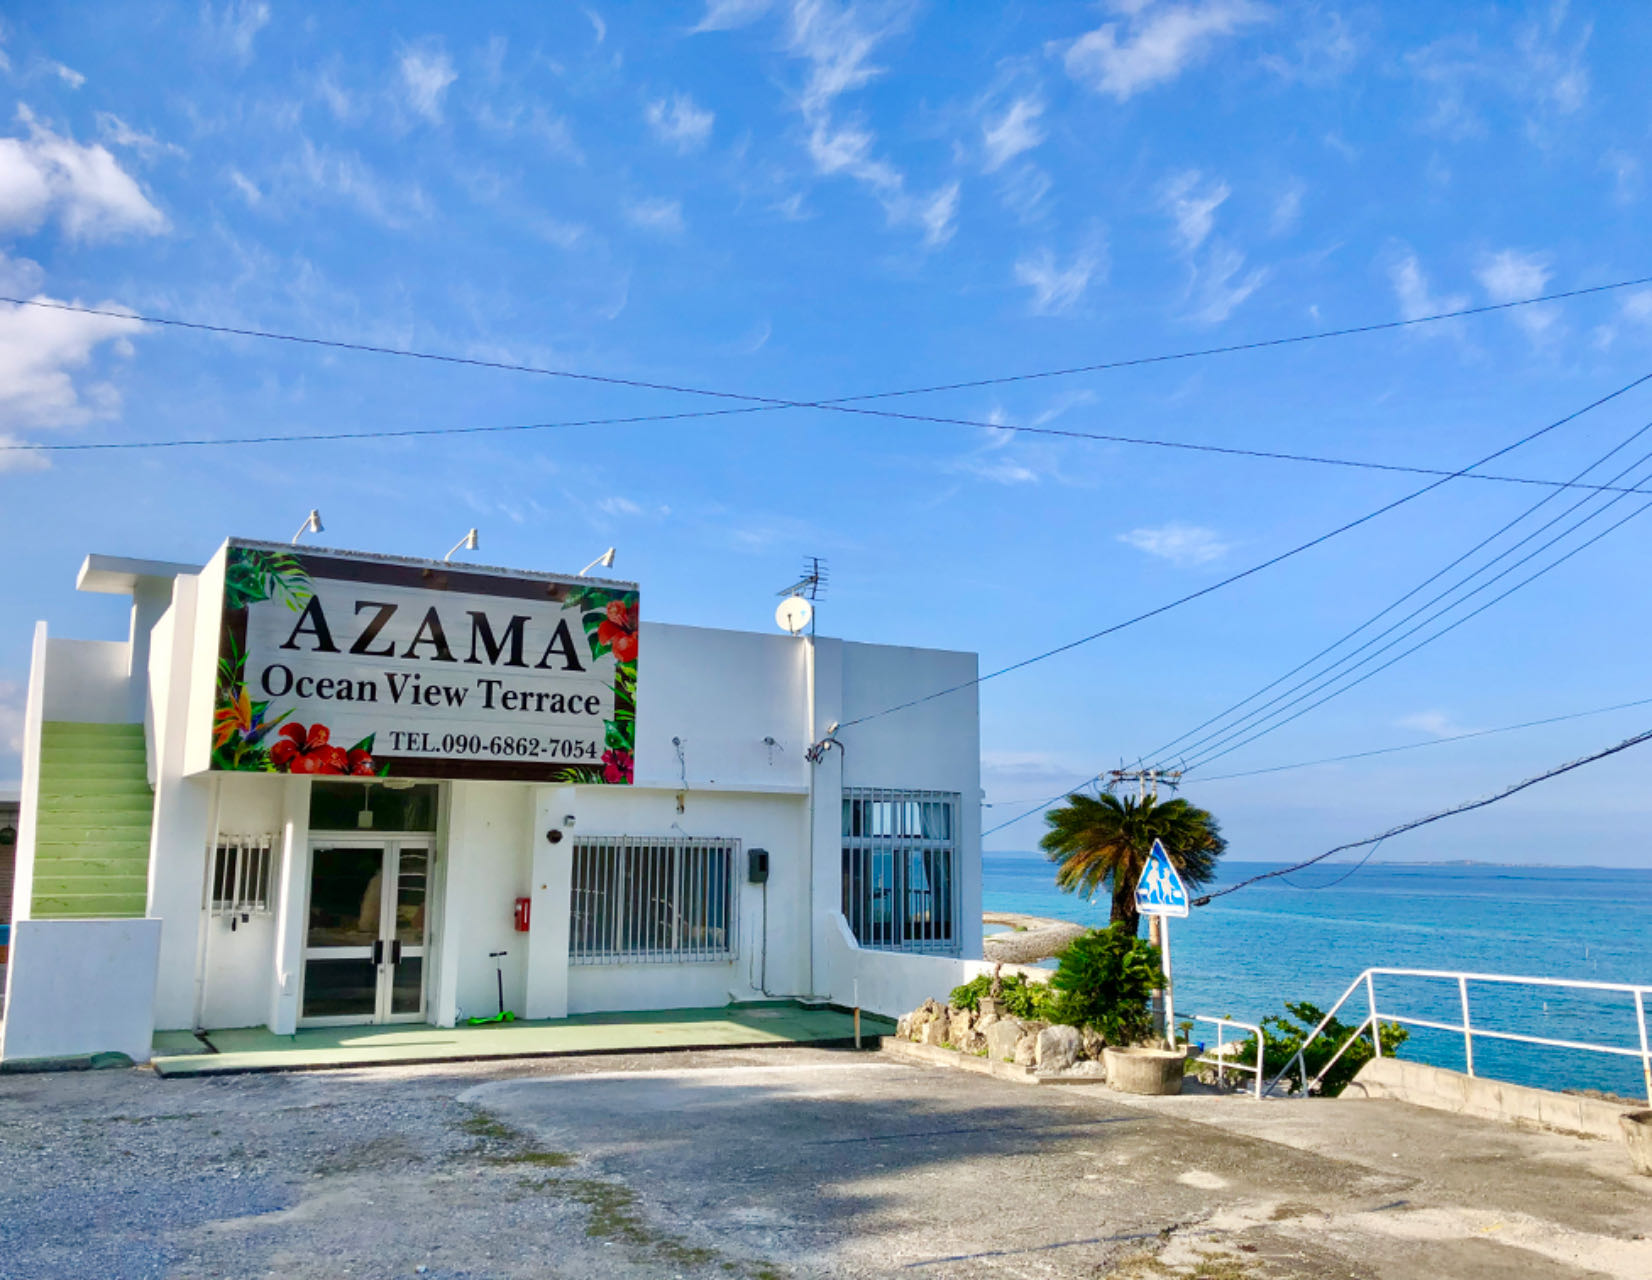 Azama Ocean View Terrace